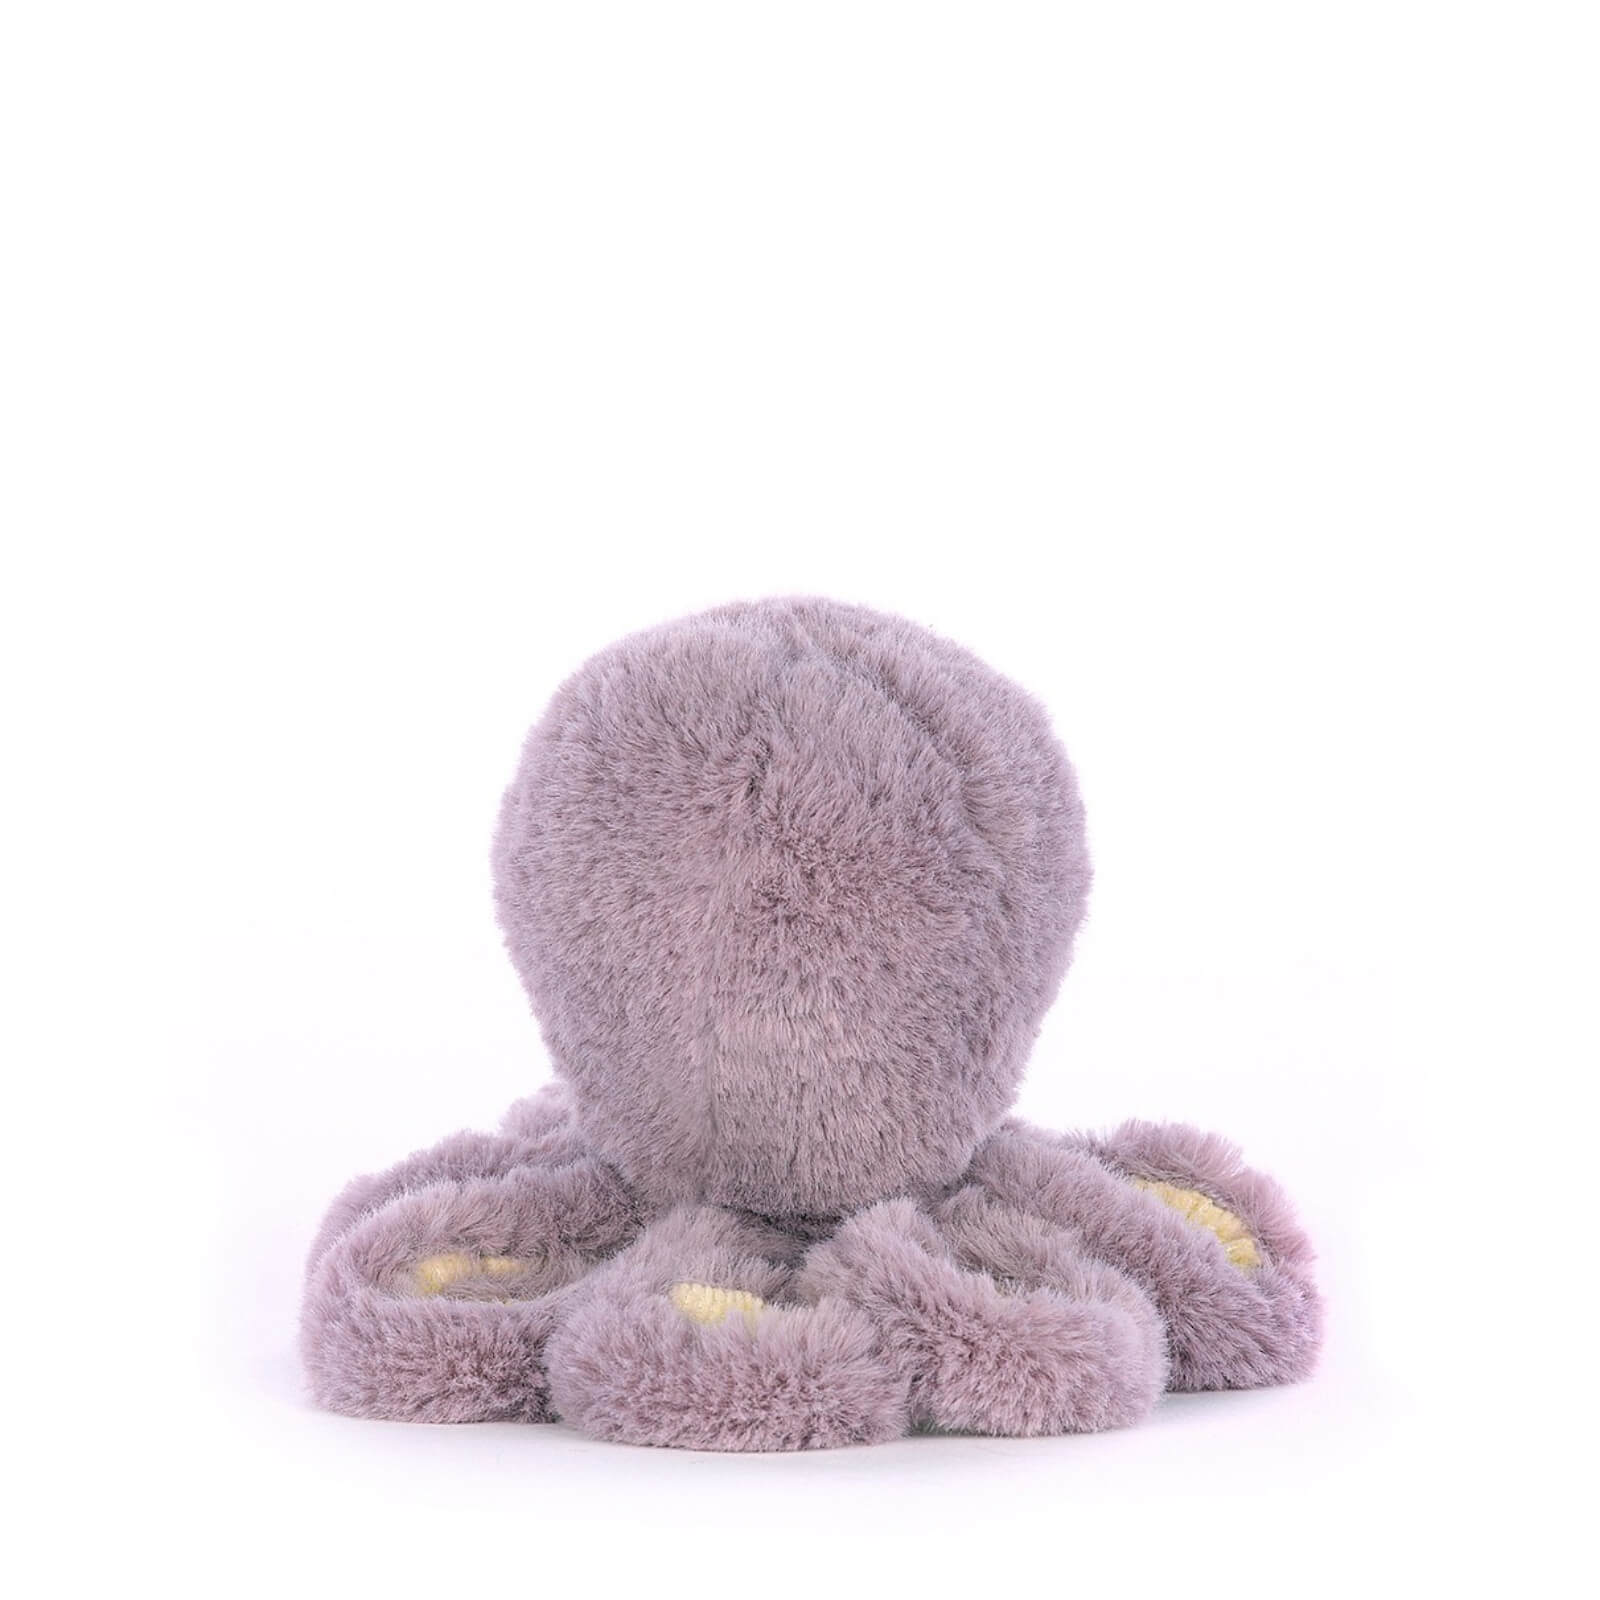 Baby Maya Octopus